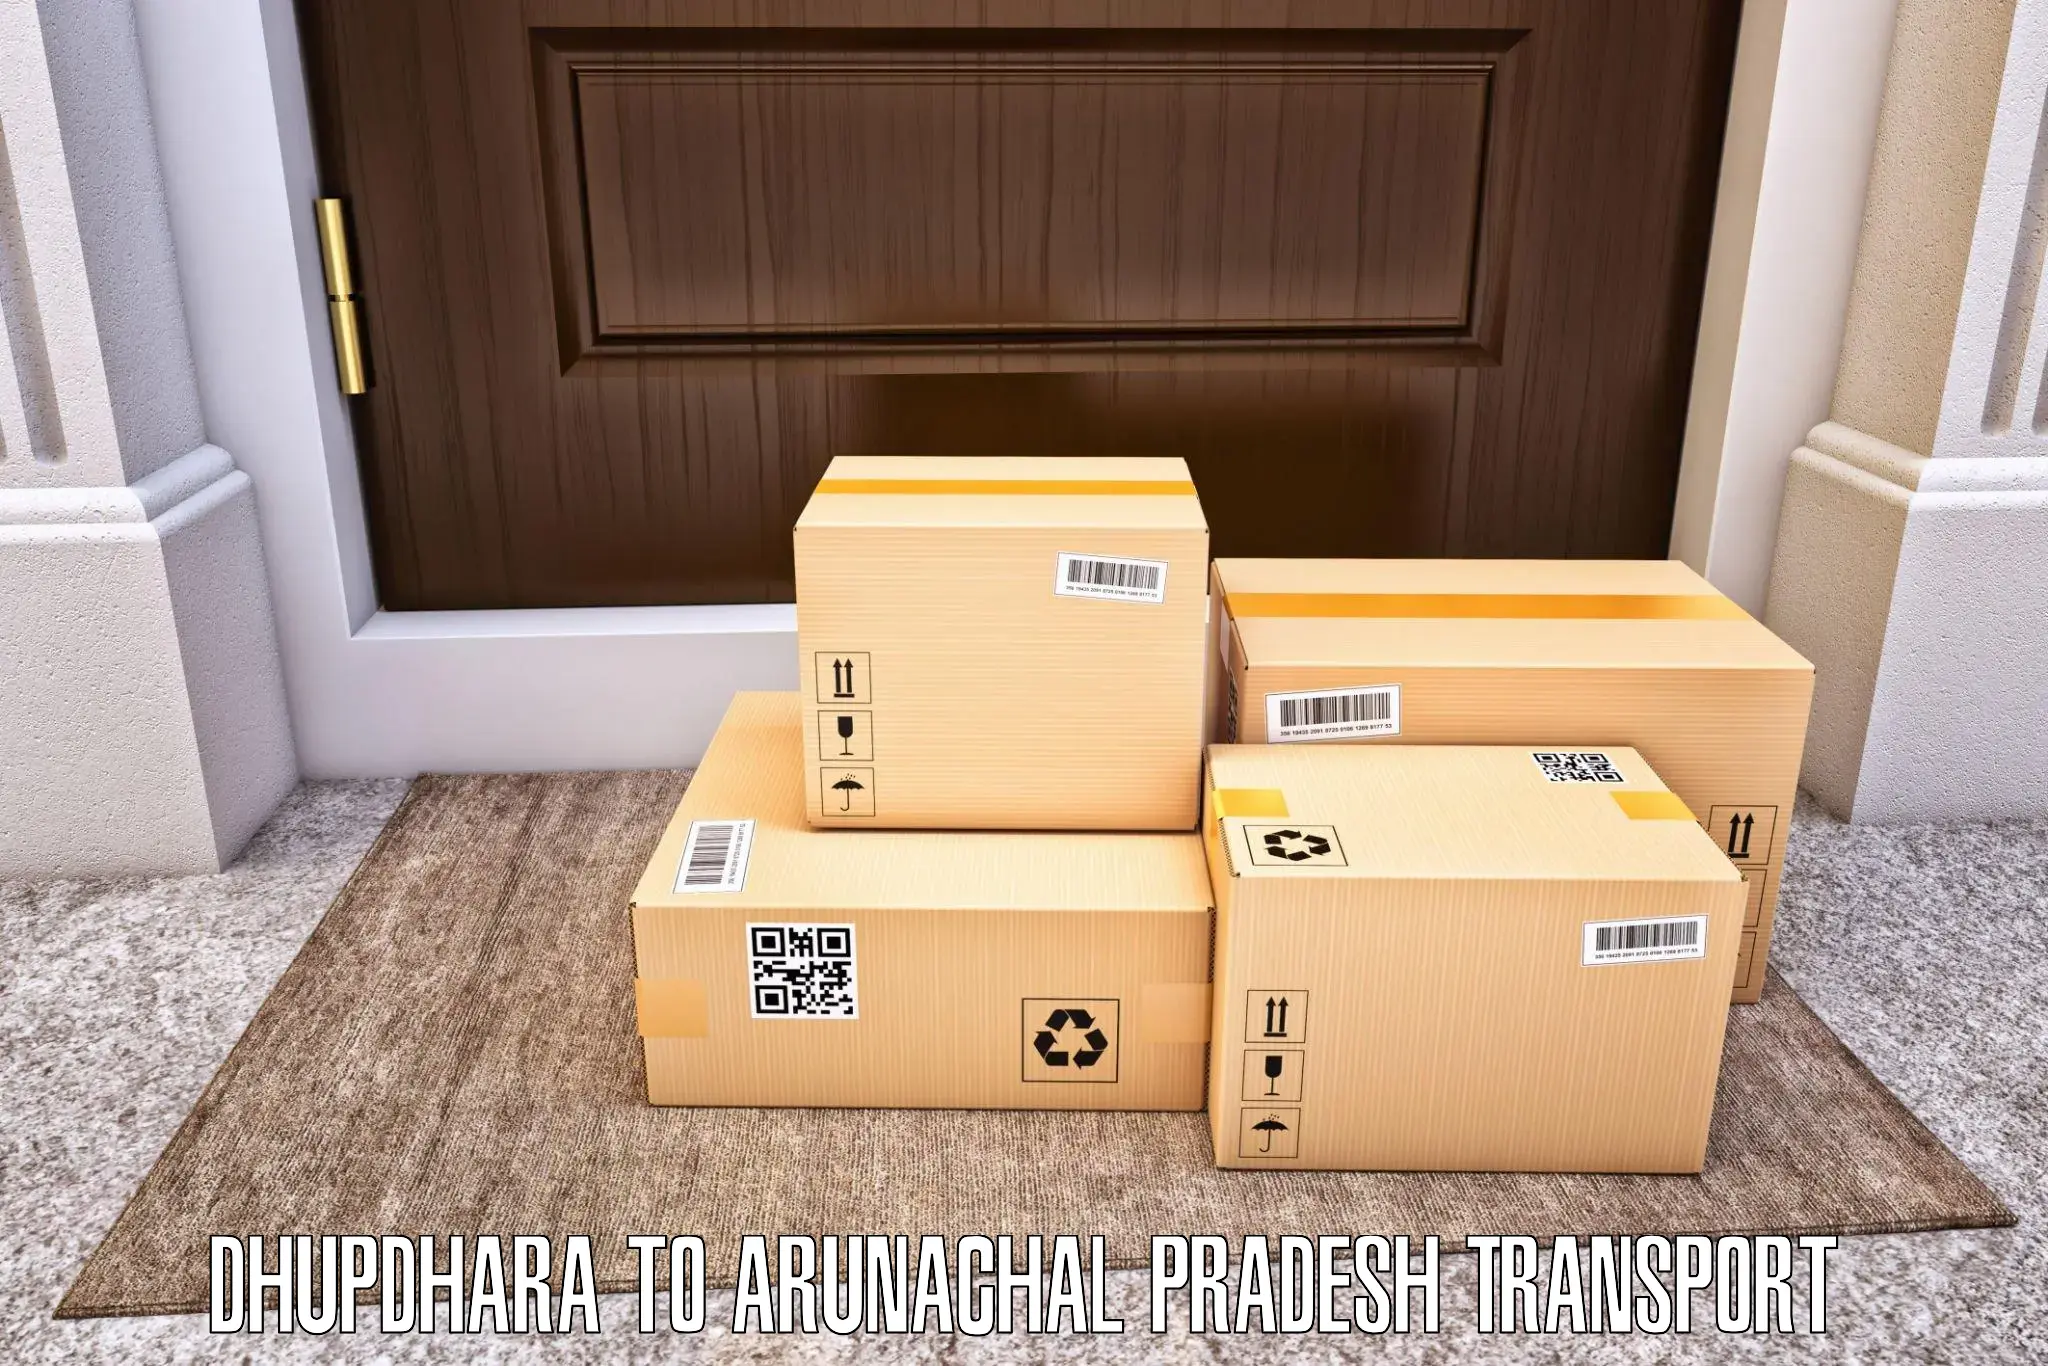 Furniture transport service Dhupdhara to Yingkiong